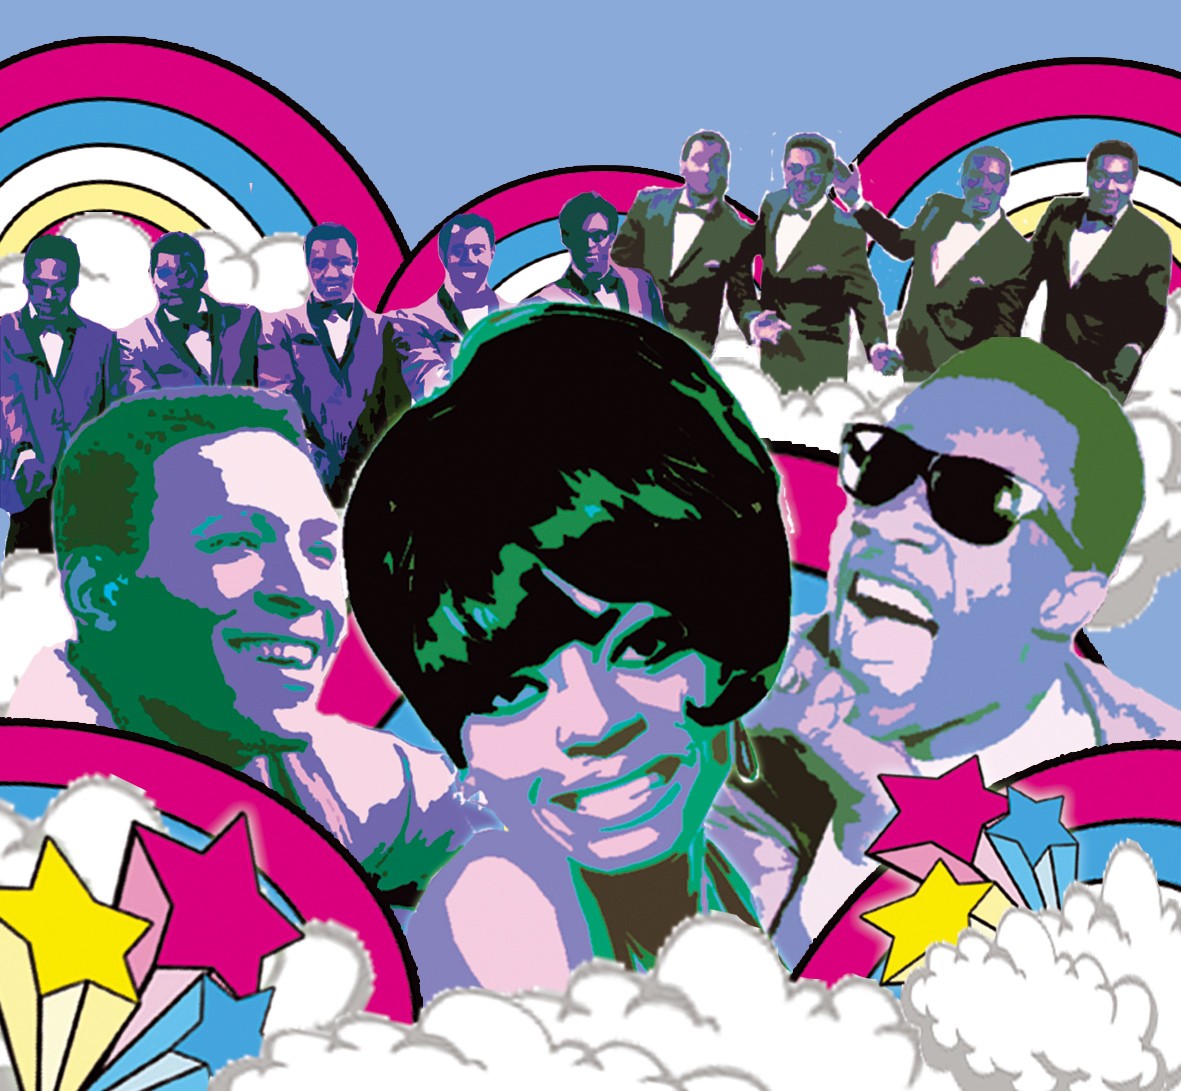 Soul Motown